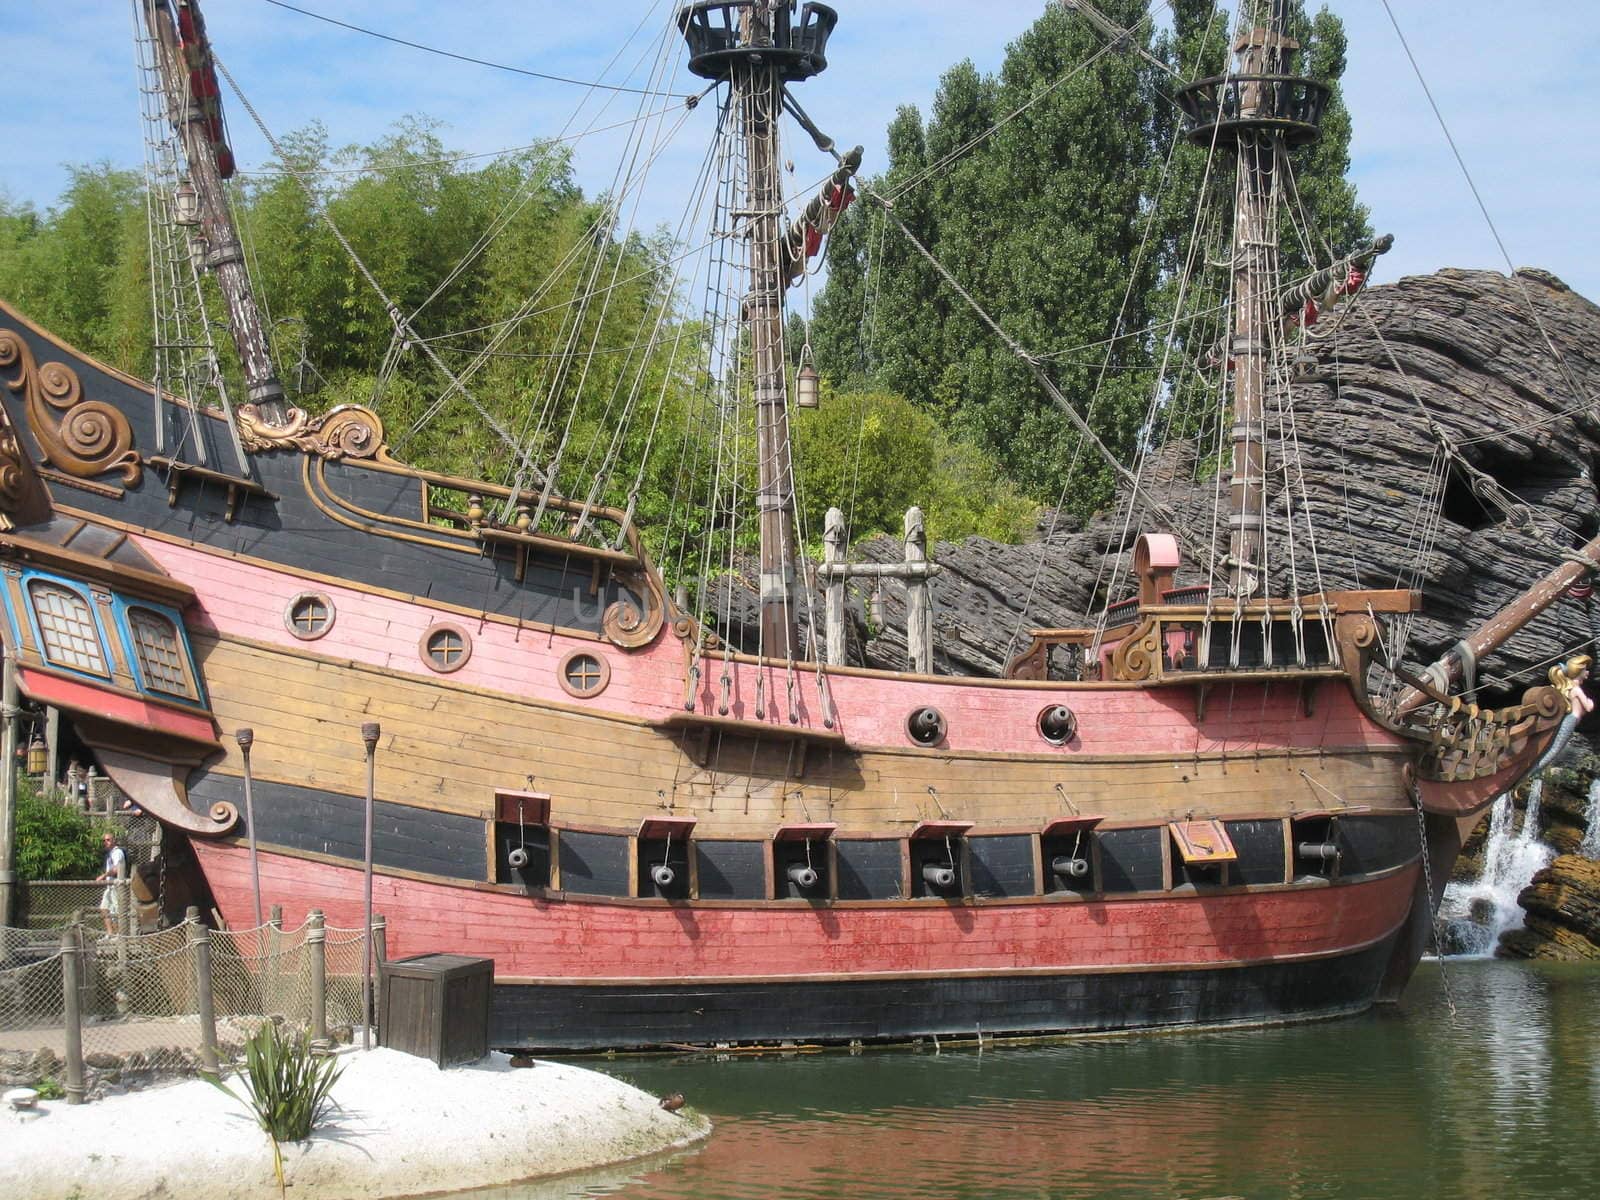 replica of a pirate ship